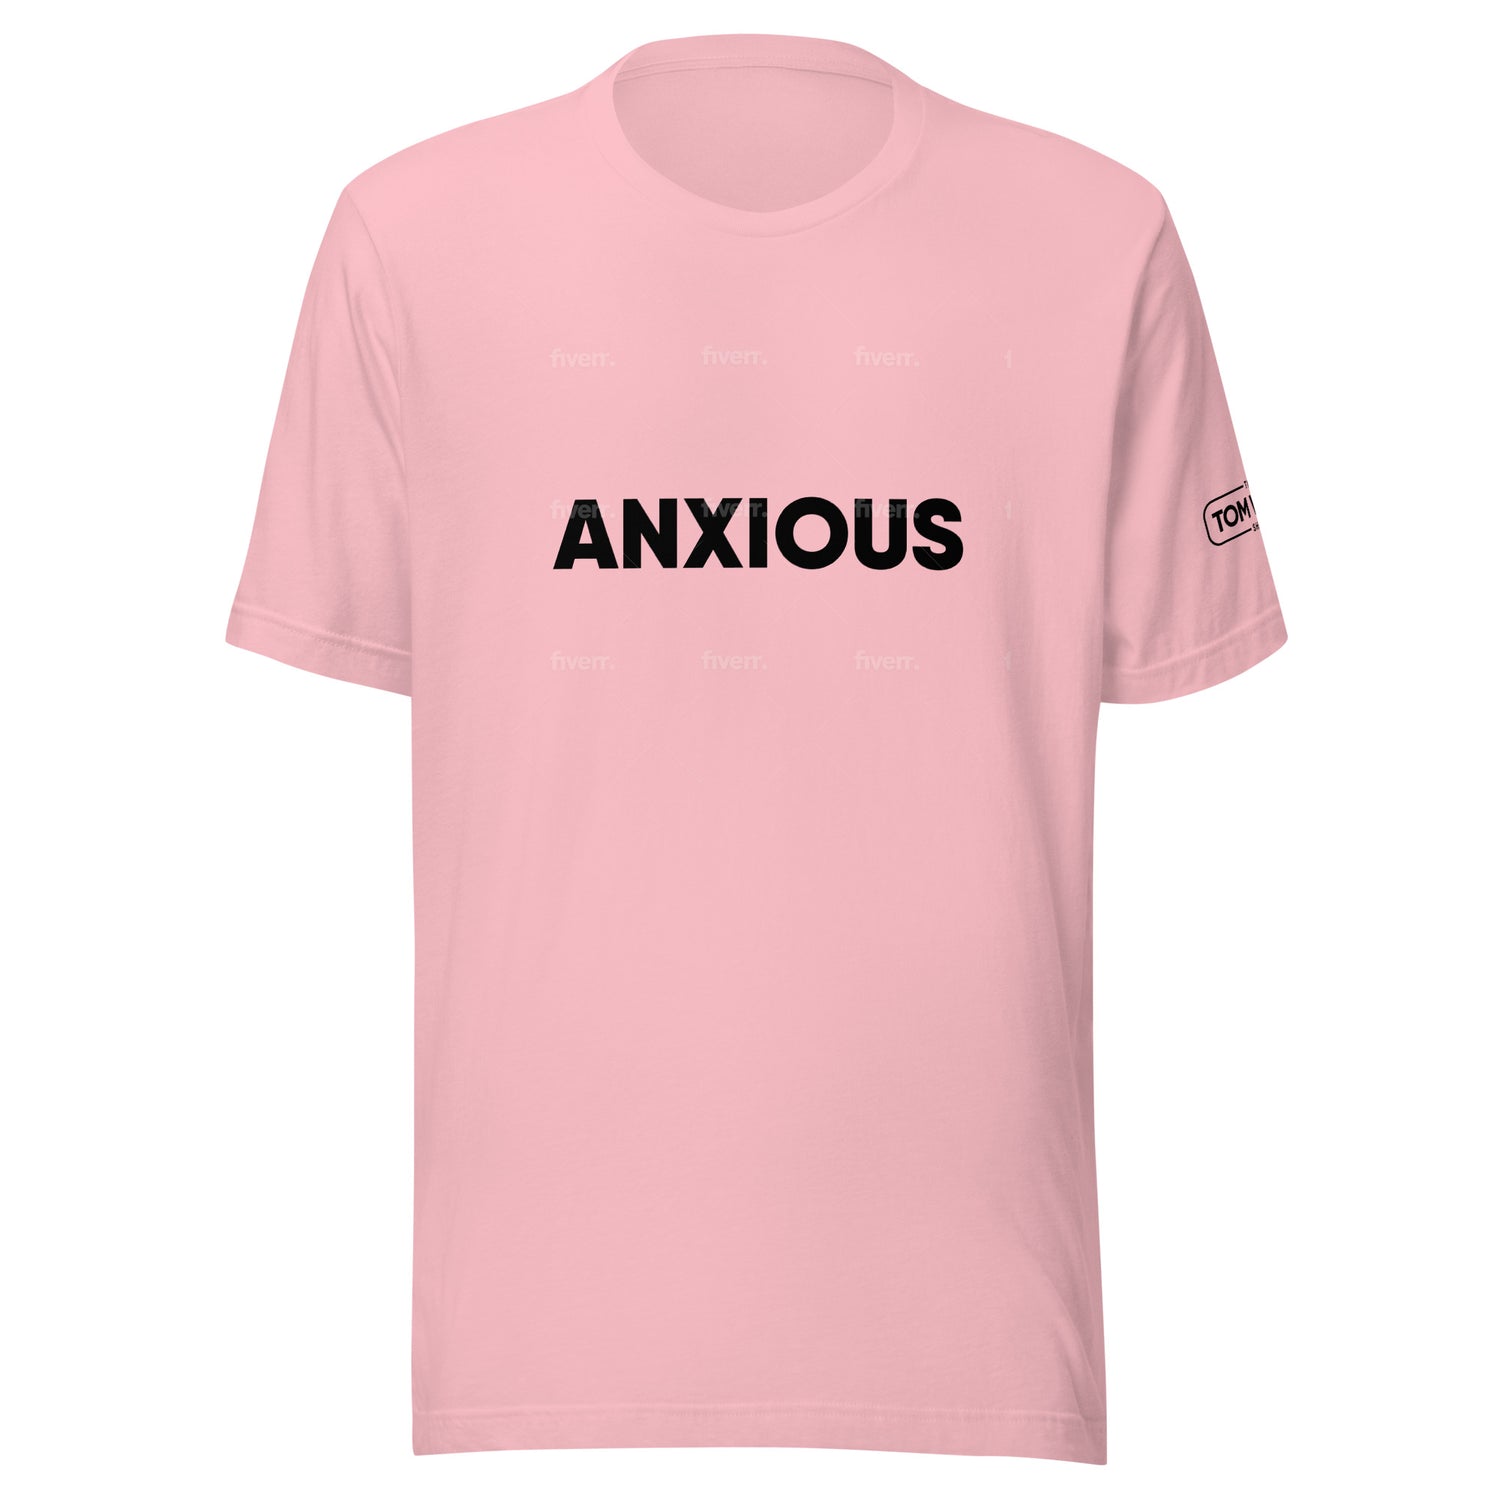 Anxious Text Tee Shirt - Pink